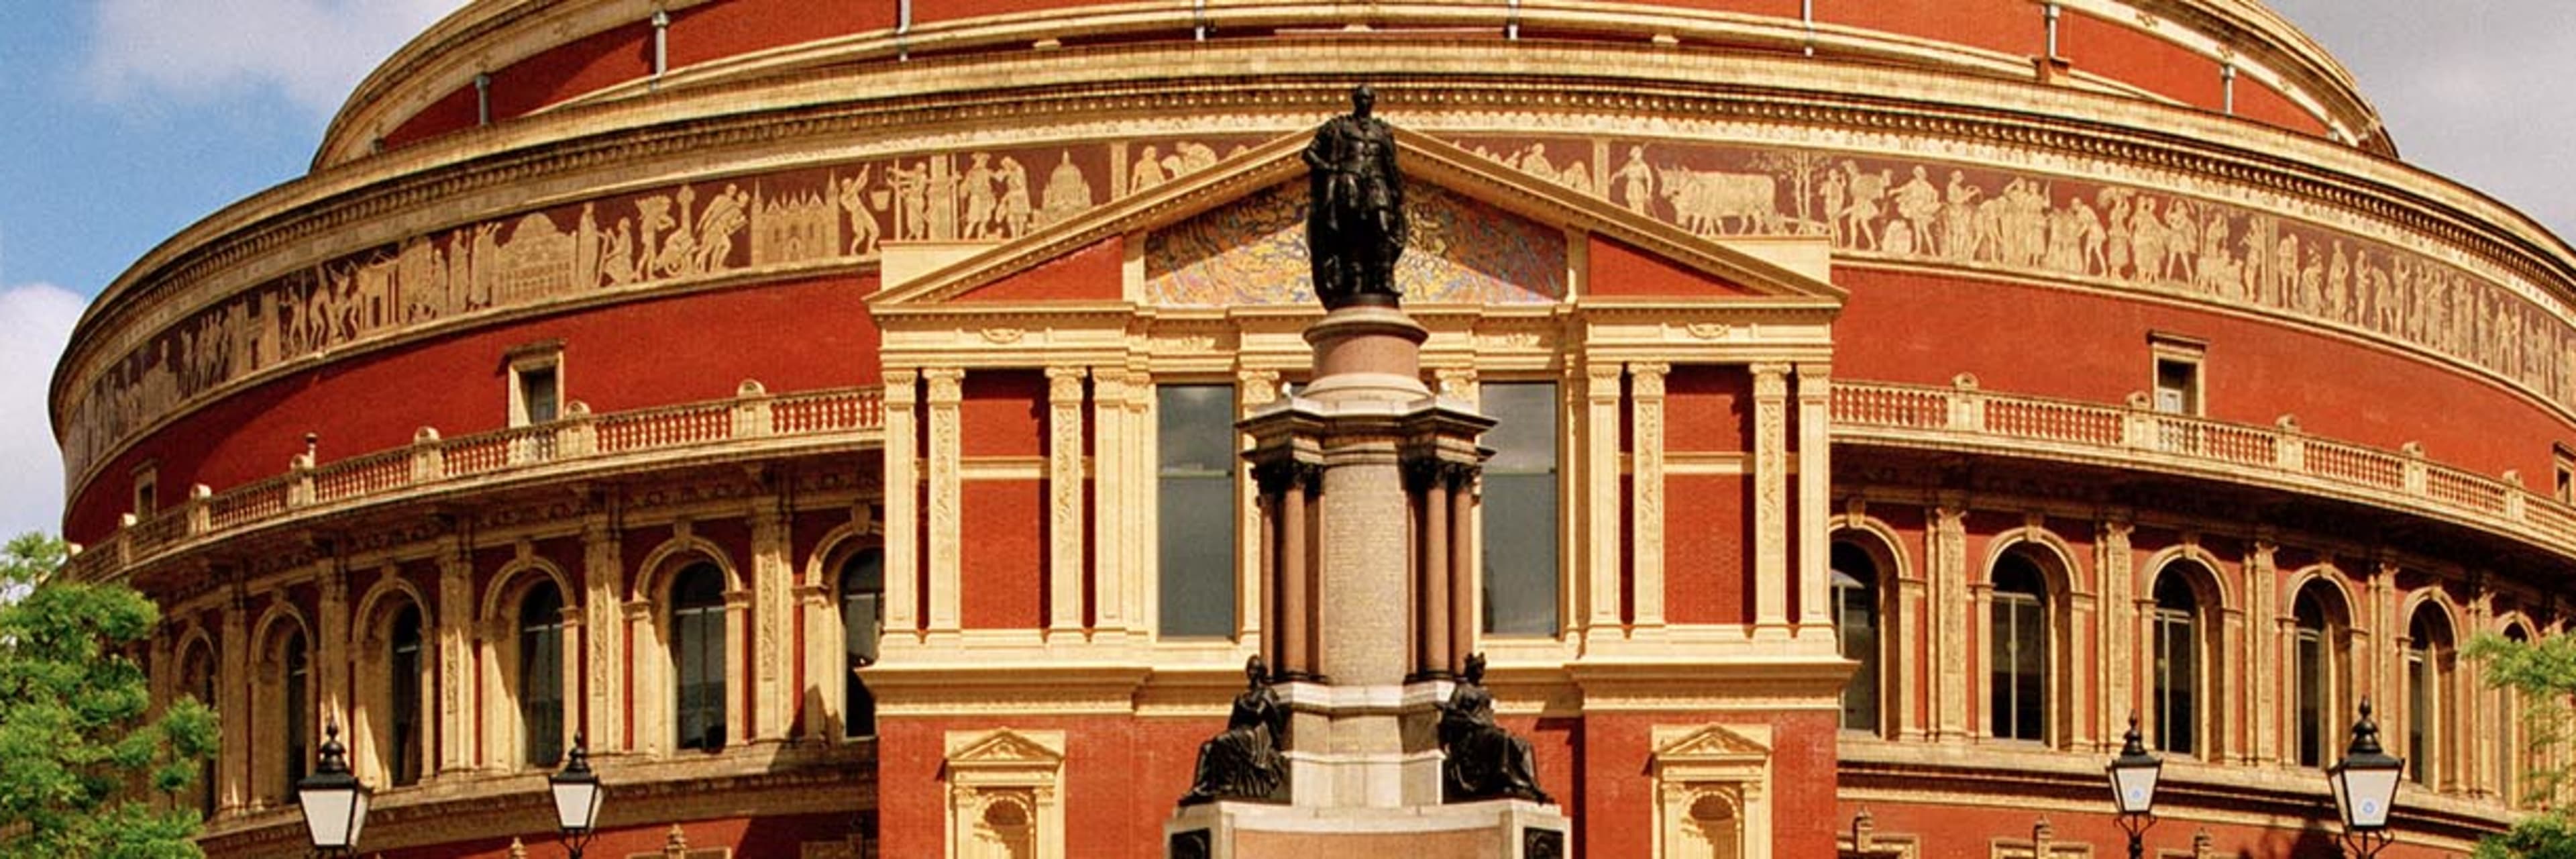 Royal Albert Hall Tours